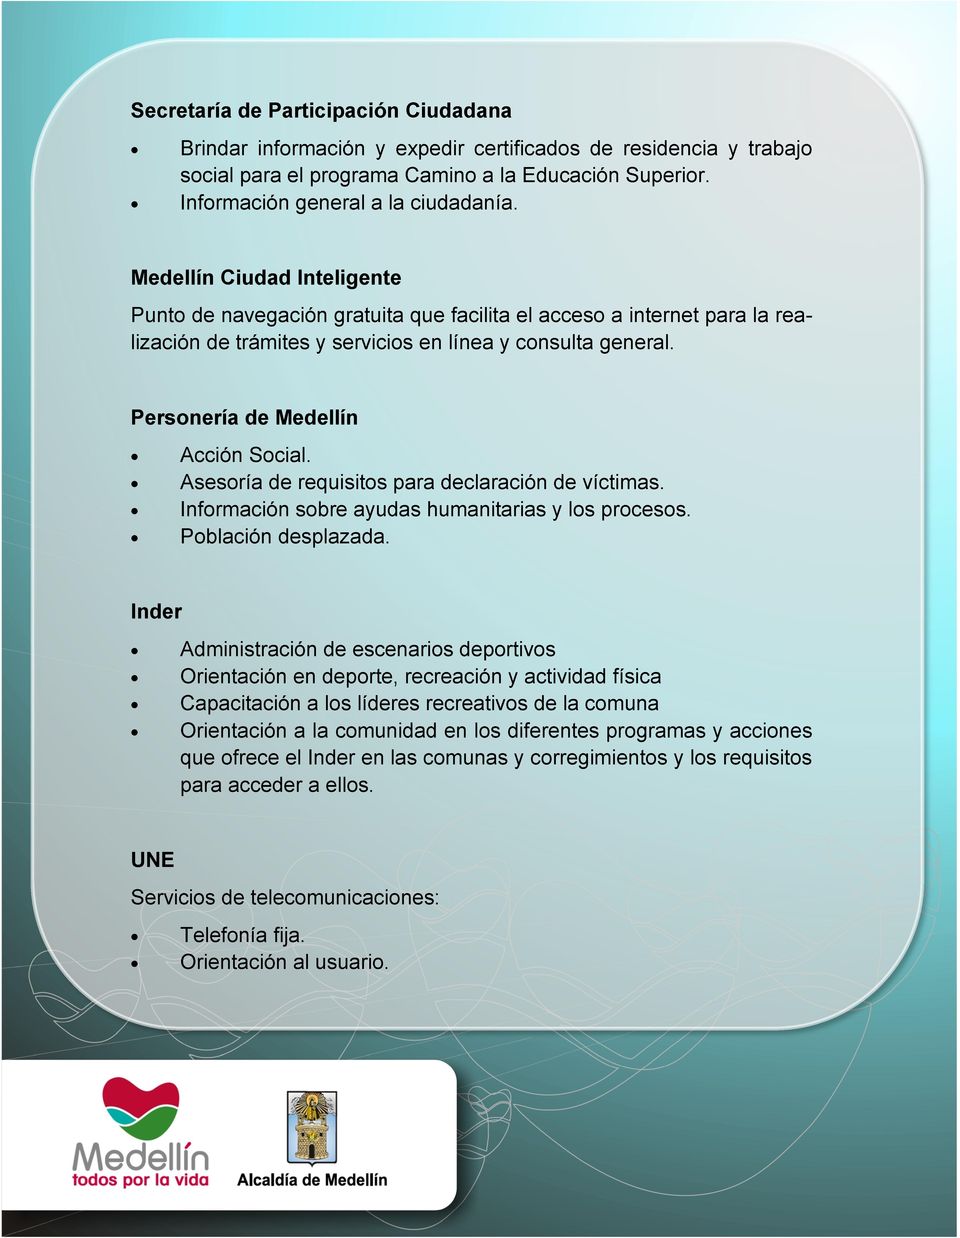 Personería de Medellín Acción Social. Asesoría de requisitos para declaración de víctimas. Información sobre ayudas humanitarias y los procesos. Población desplazada.